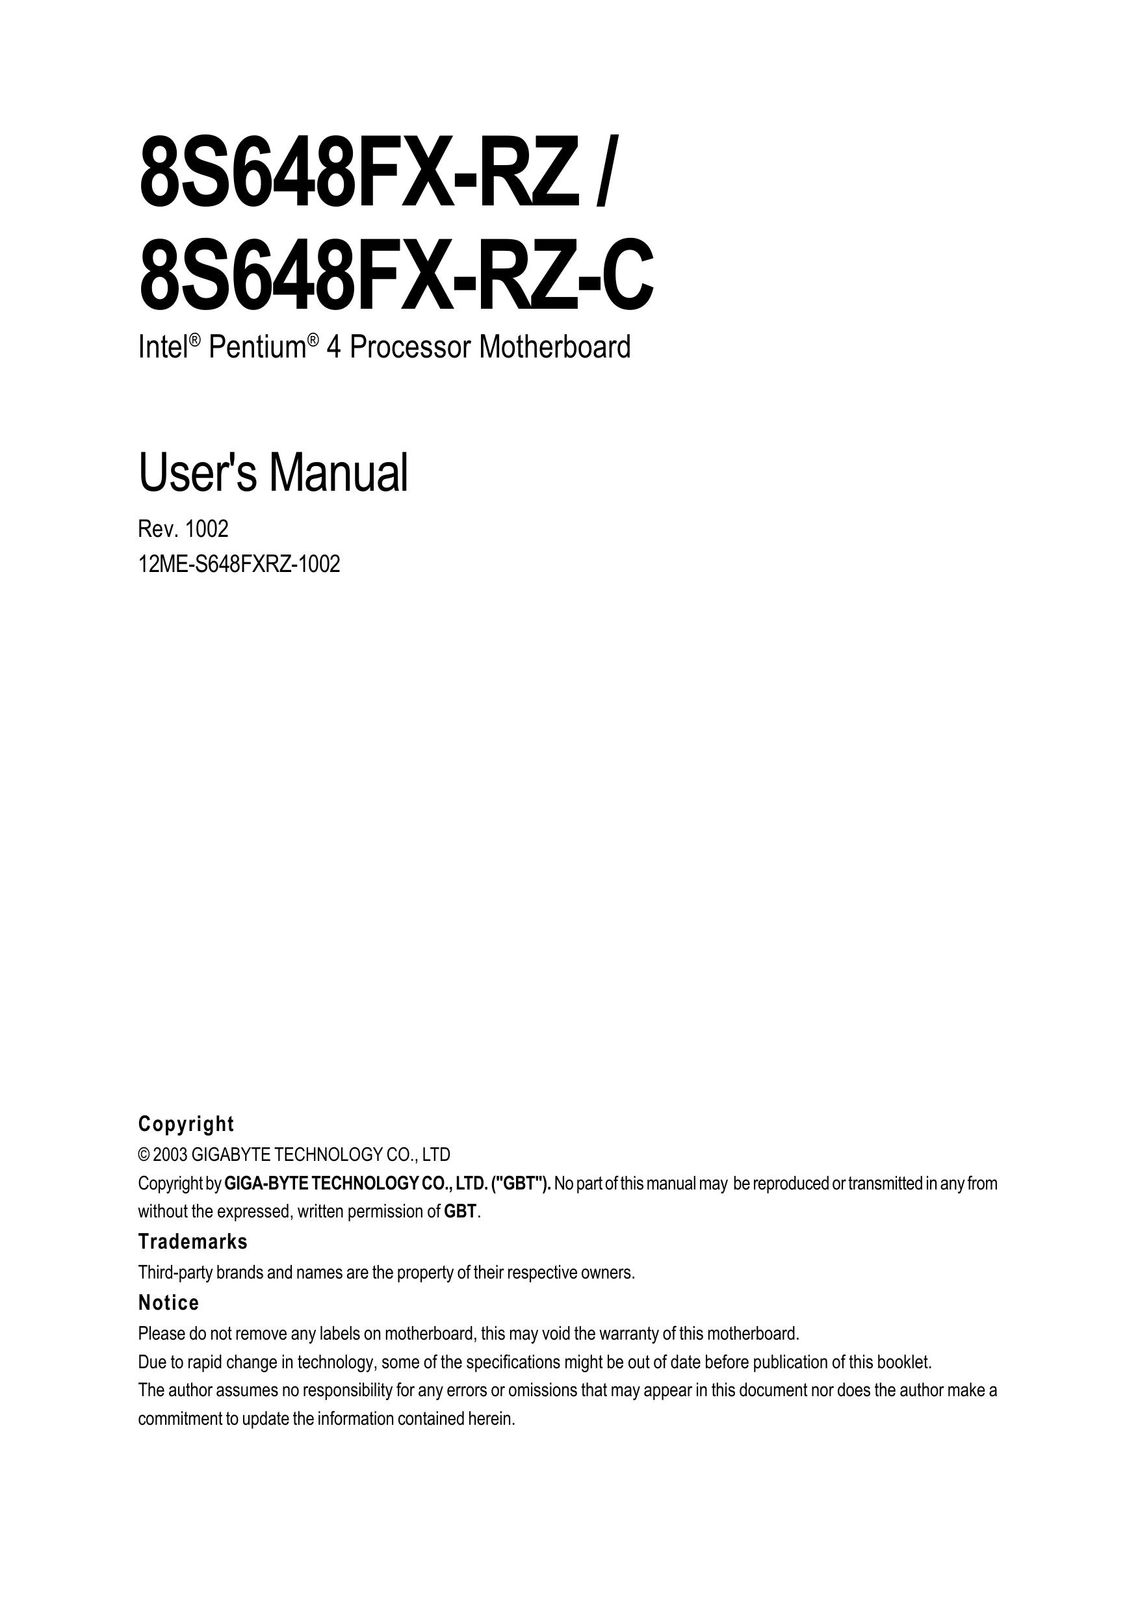 Gigabyte 8S648FX-RZ Computer Hardware User Manual